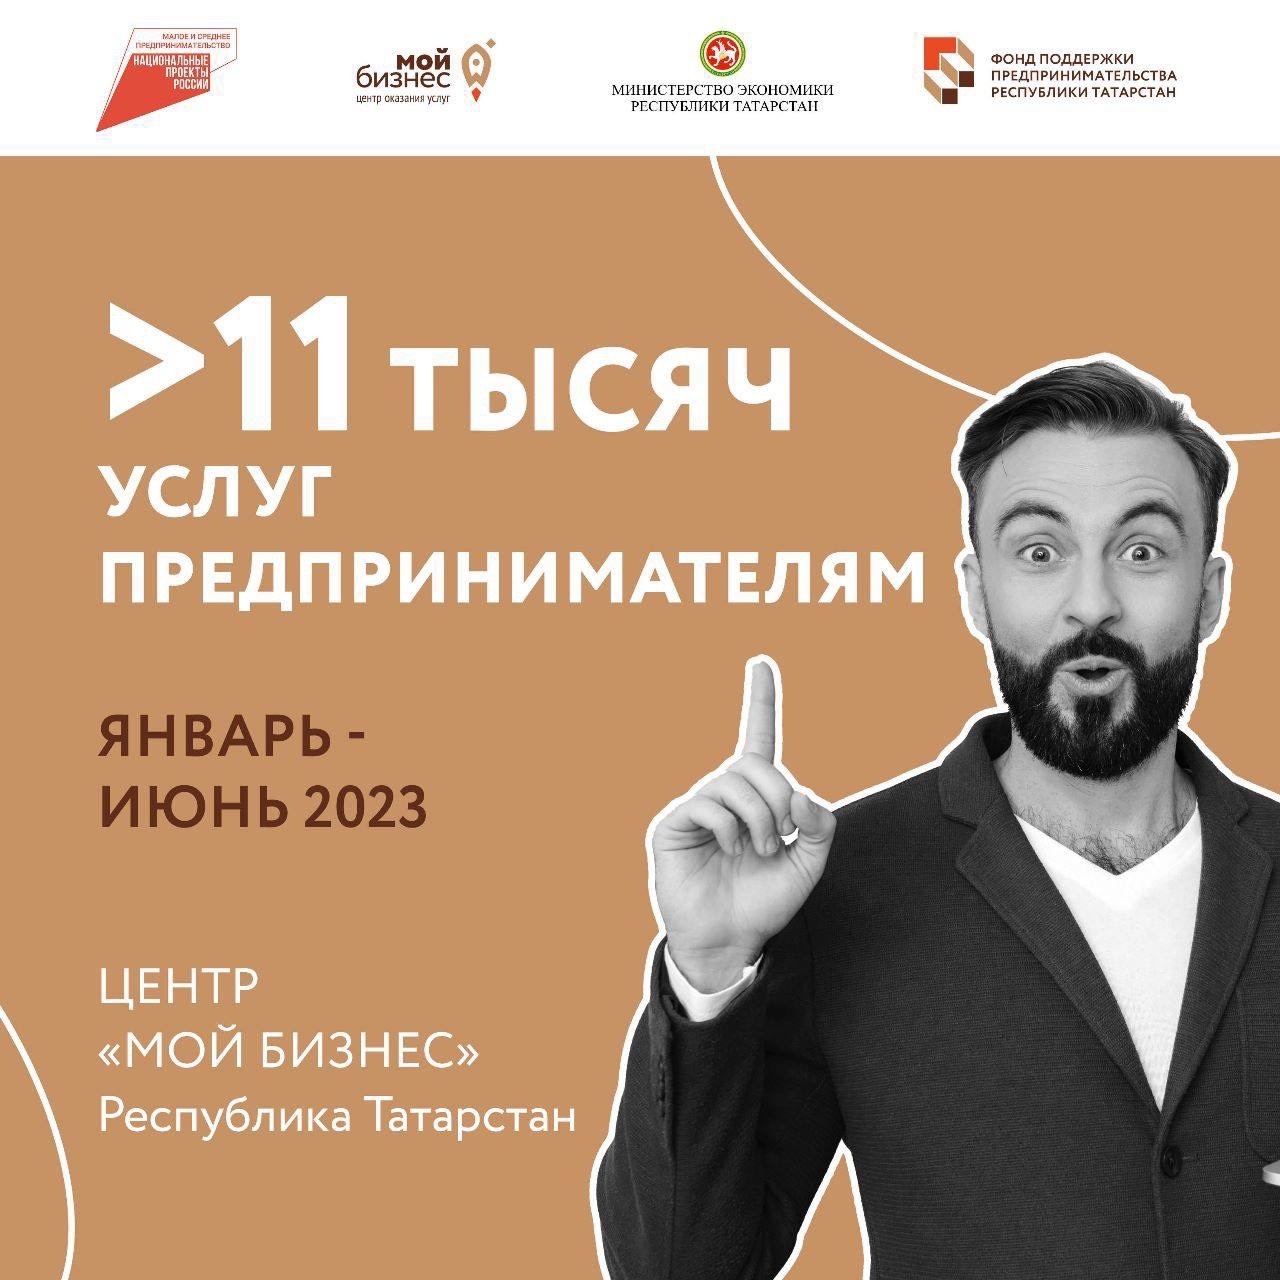 Более 11 тысяч услуг. Центр «Мой бизнес» в Татарстане подвел итоги работы первого полугодия.